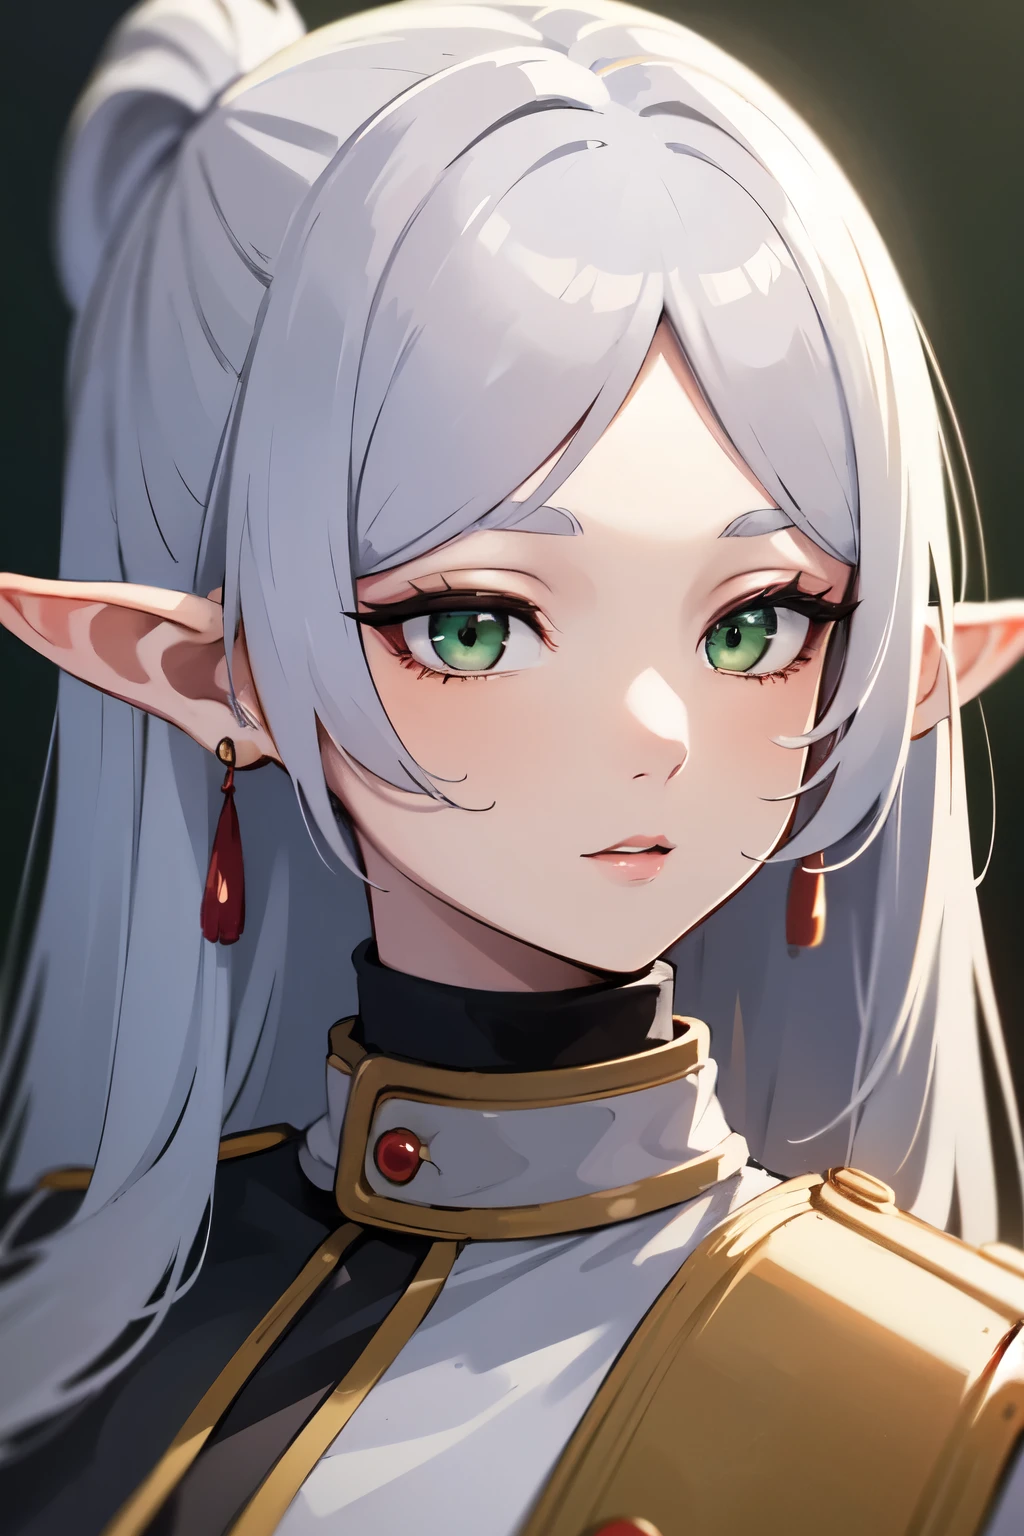 ((mejor calidad)), ((obra maestra)), (detallado), cara perfecta. niña asiatica. Cabello plateado. ojos verdes. orejas de elfo.